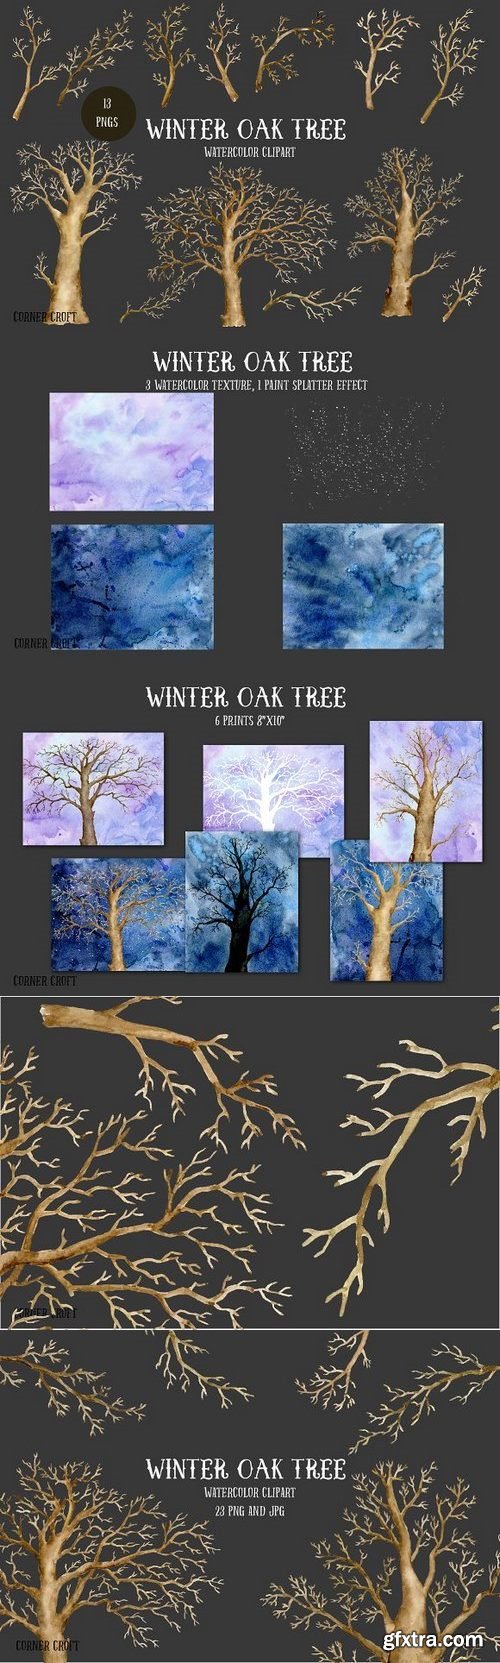 CM - Watercolor Clipart Winter Oak Tree 1099021